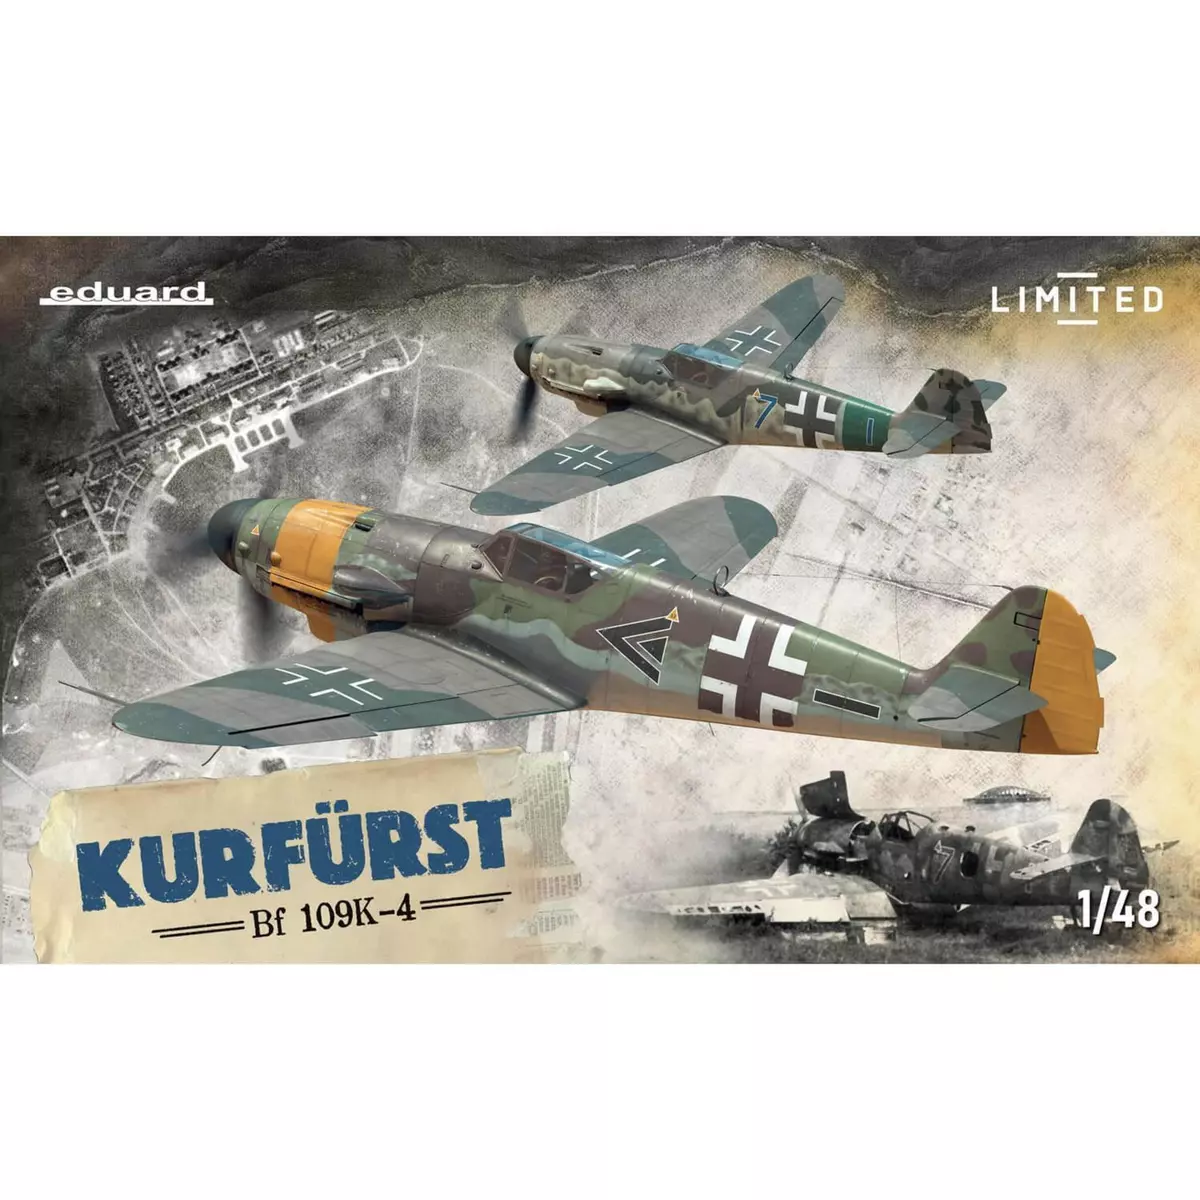 Eduard Maquette avion militaire : Kurfürst, édition limitée